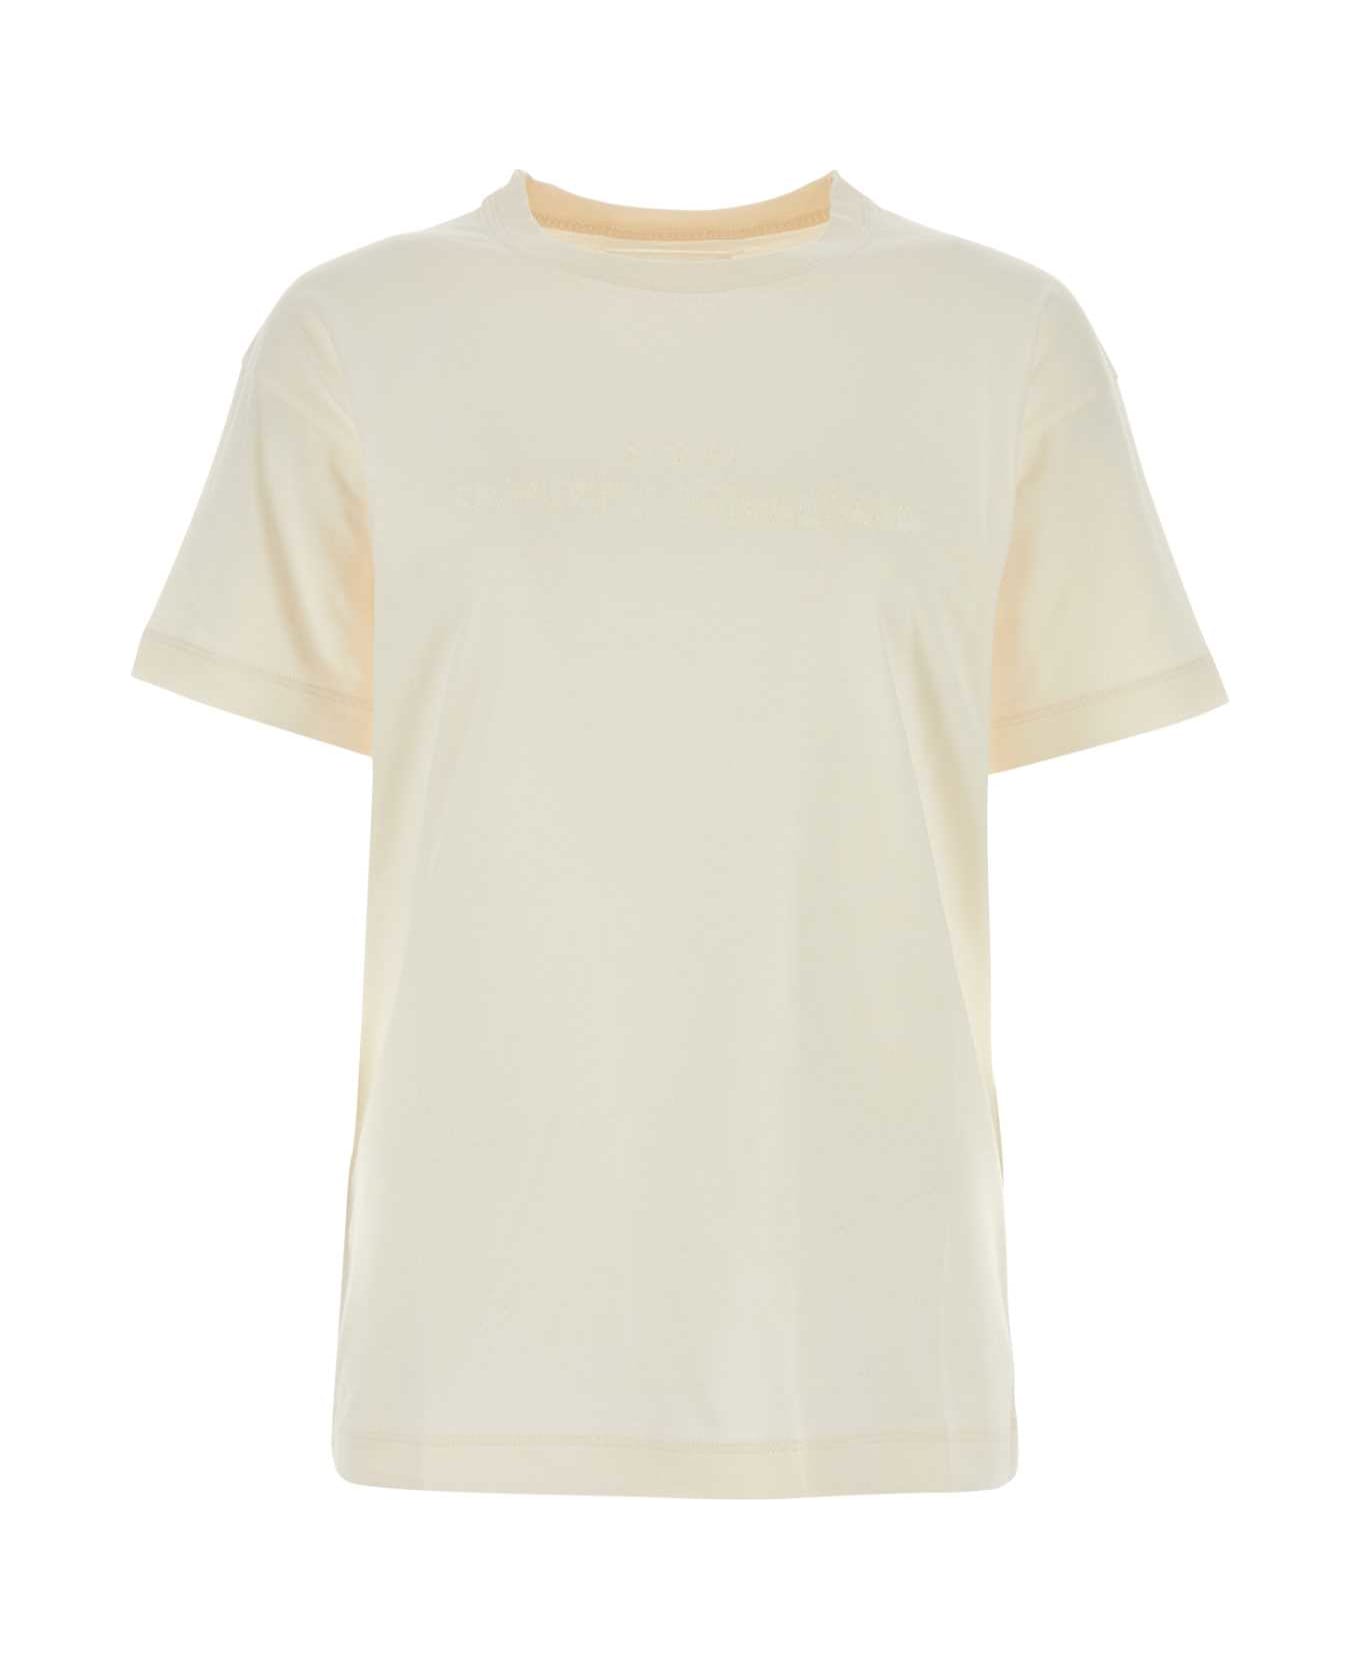 Maison Margiela Ivory Cotton T-shirt - OFFWHITE